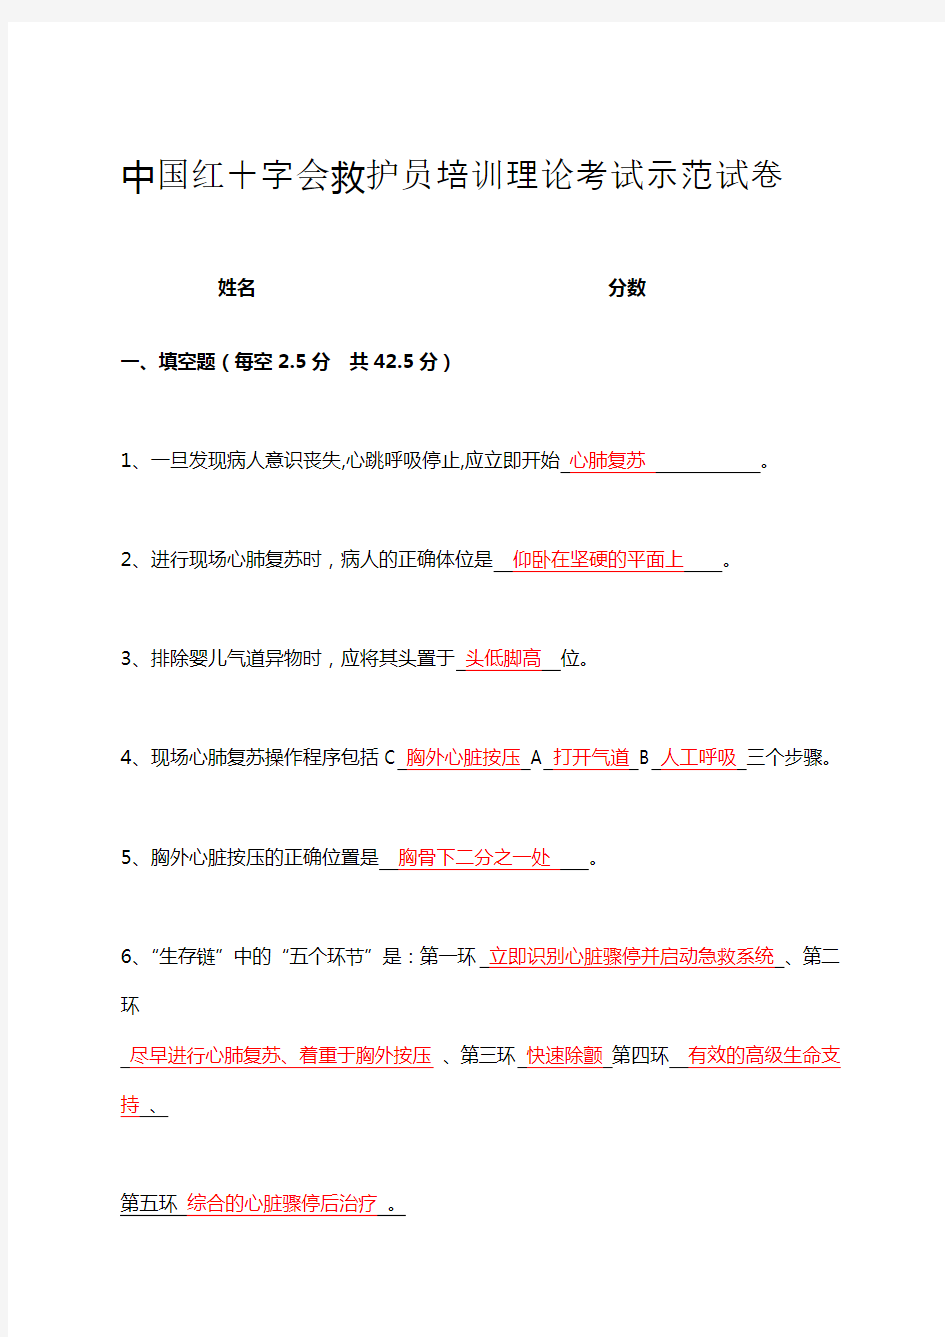 中国红十字会救护员培训理论考试示范卷试答案